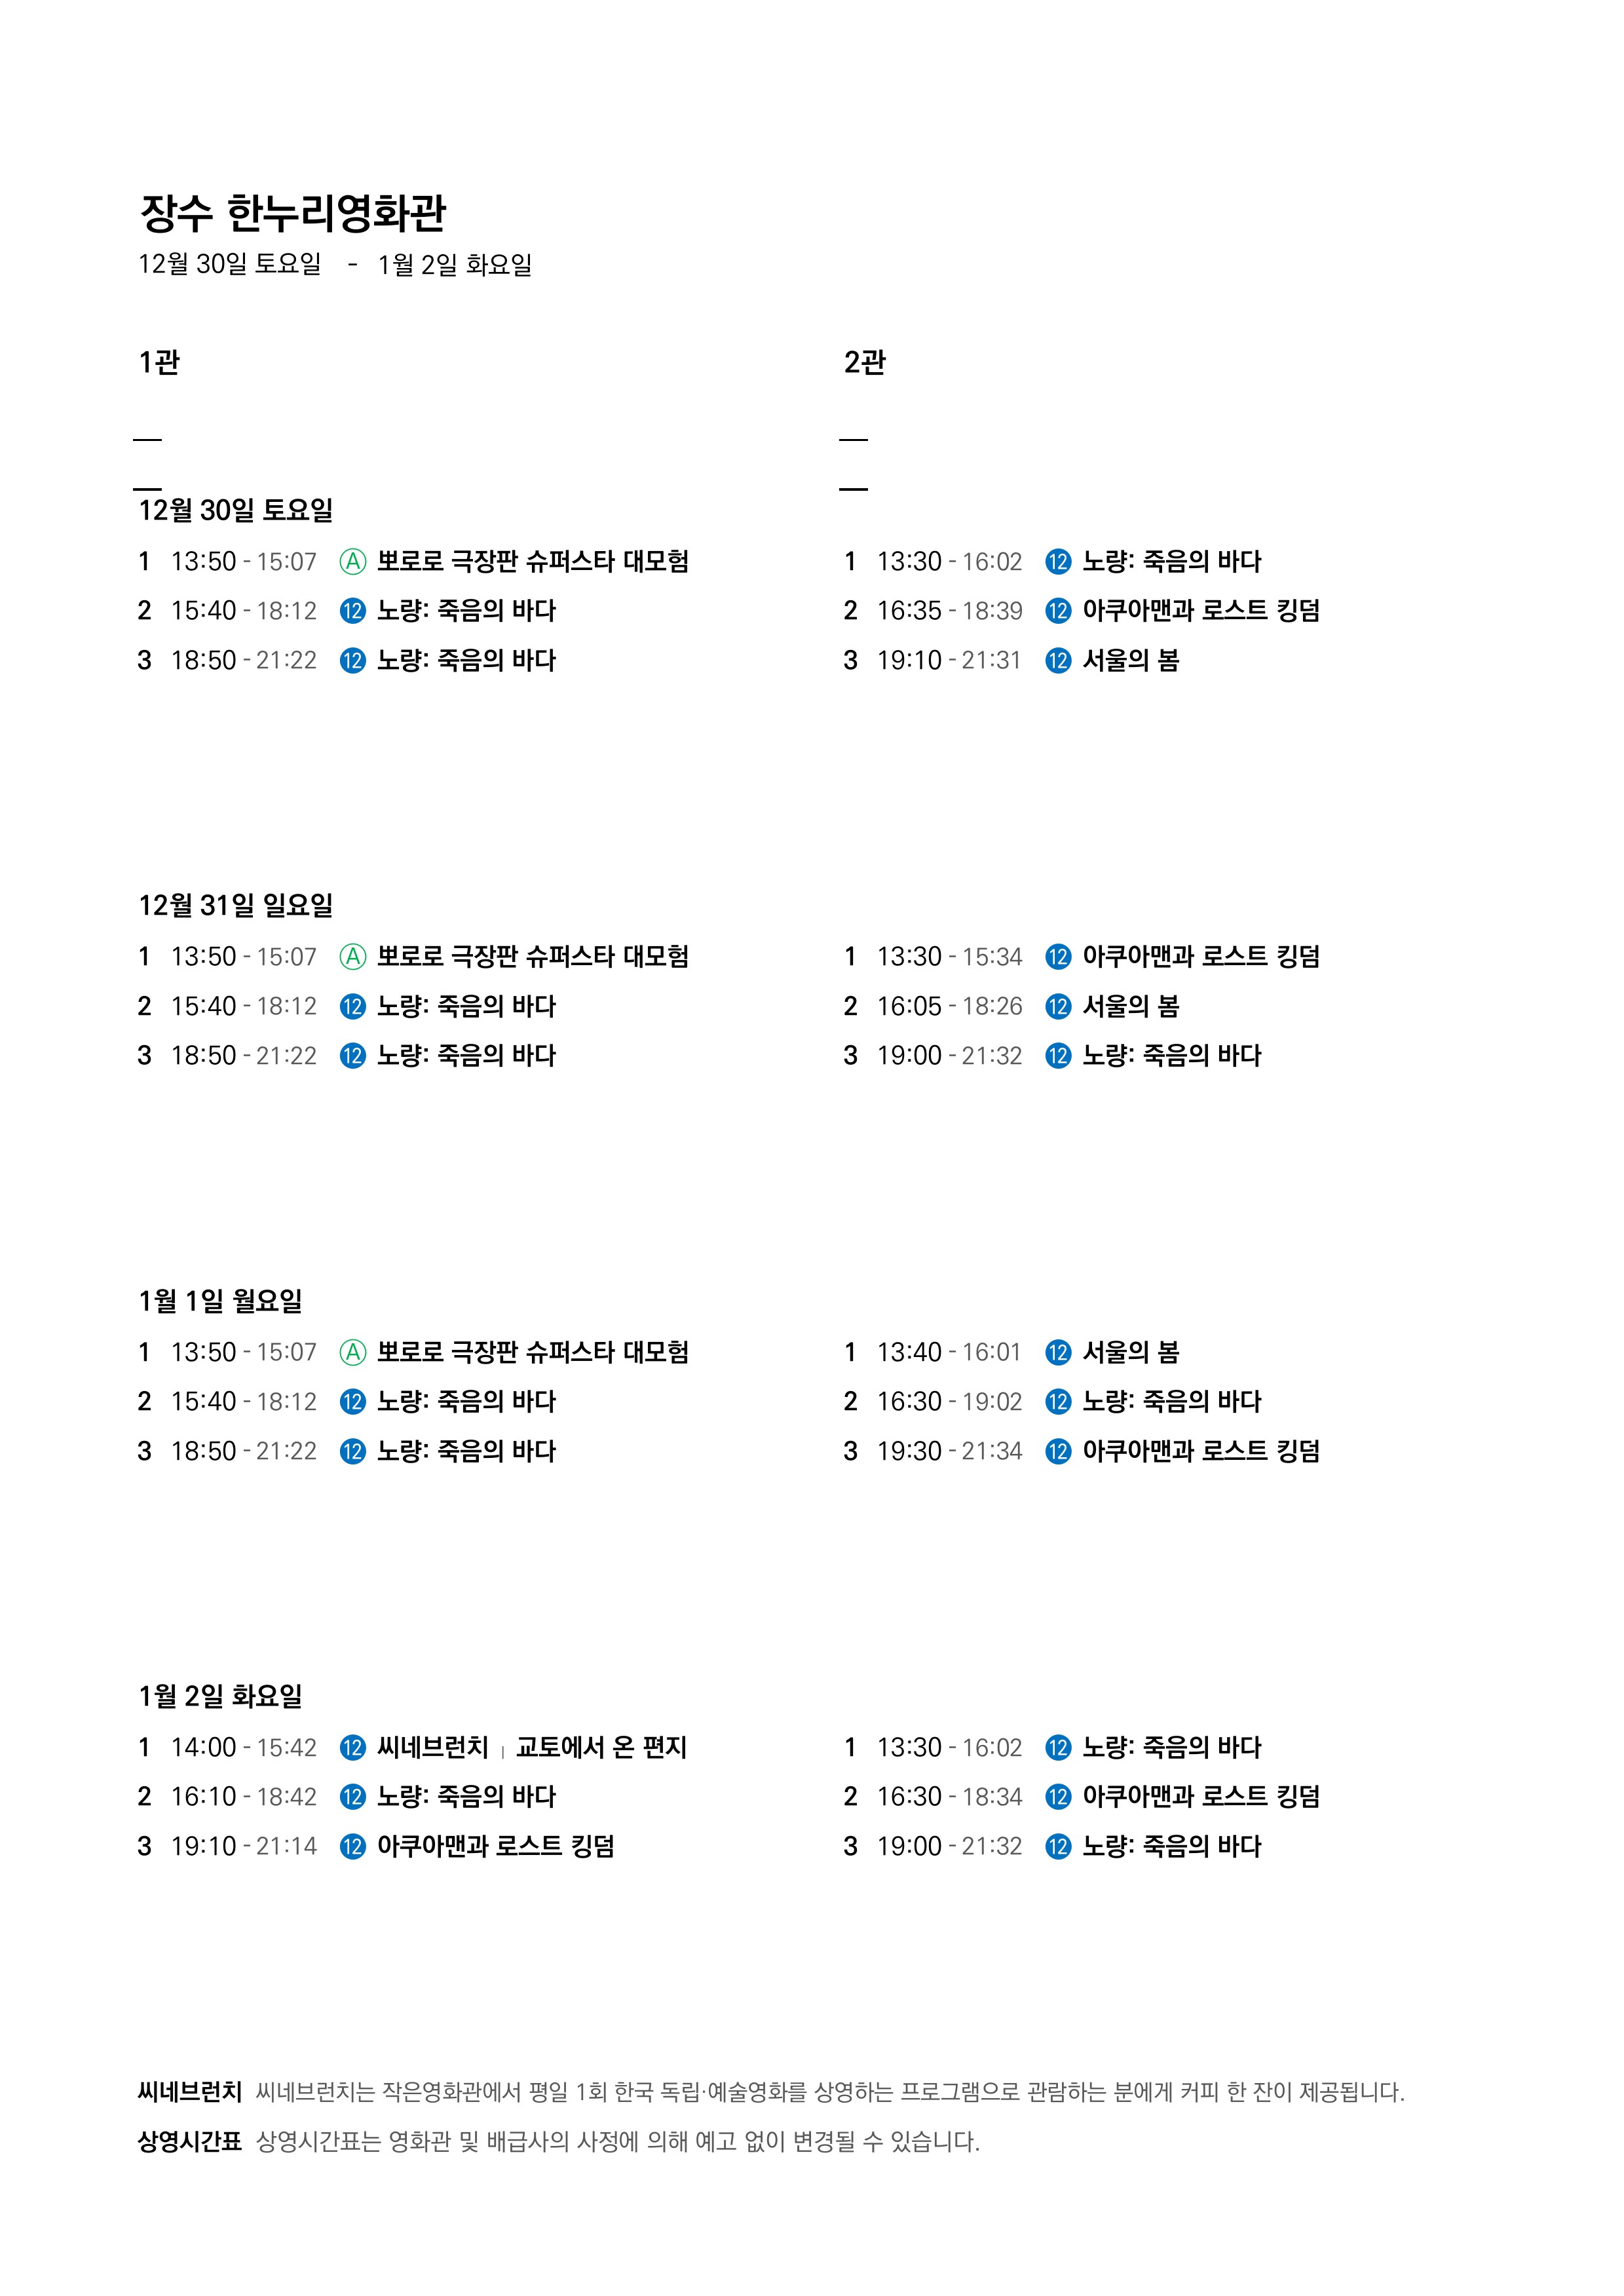 영화상영 시간표(23.12.30.~24.1.2.) 사진